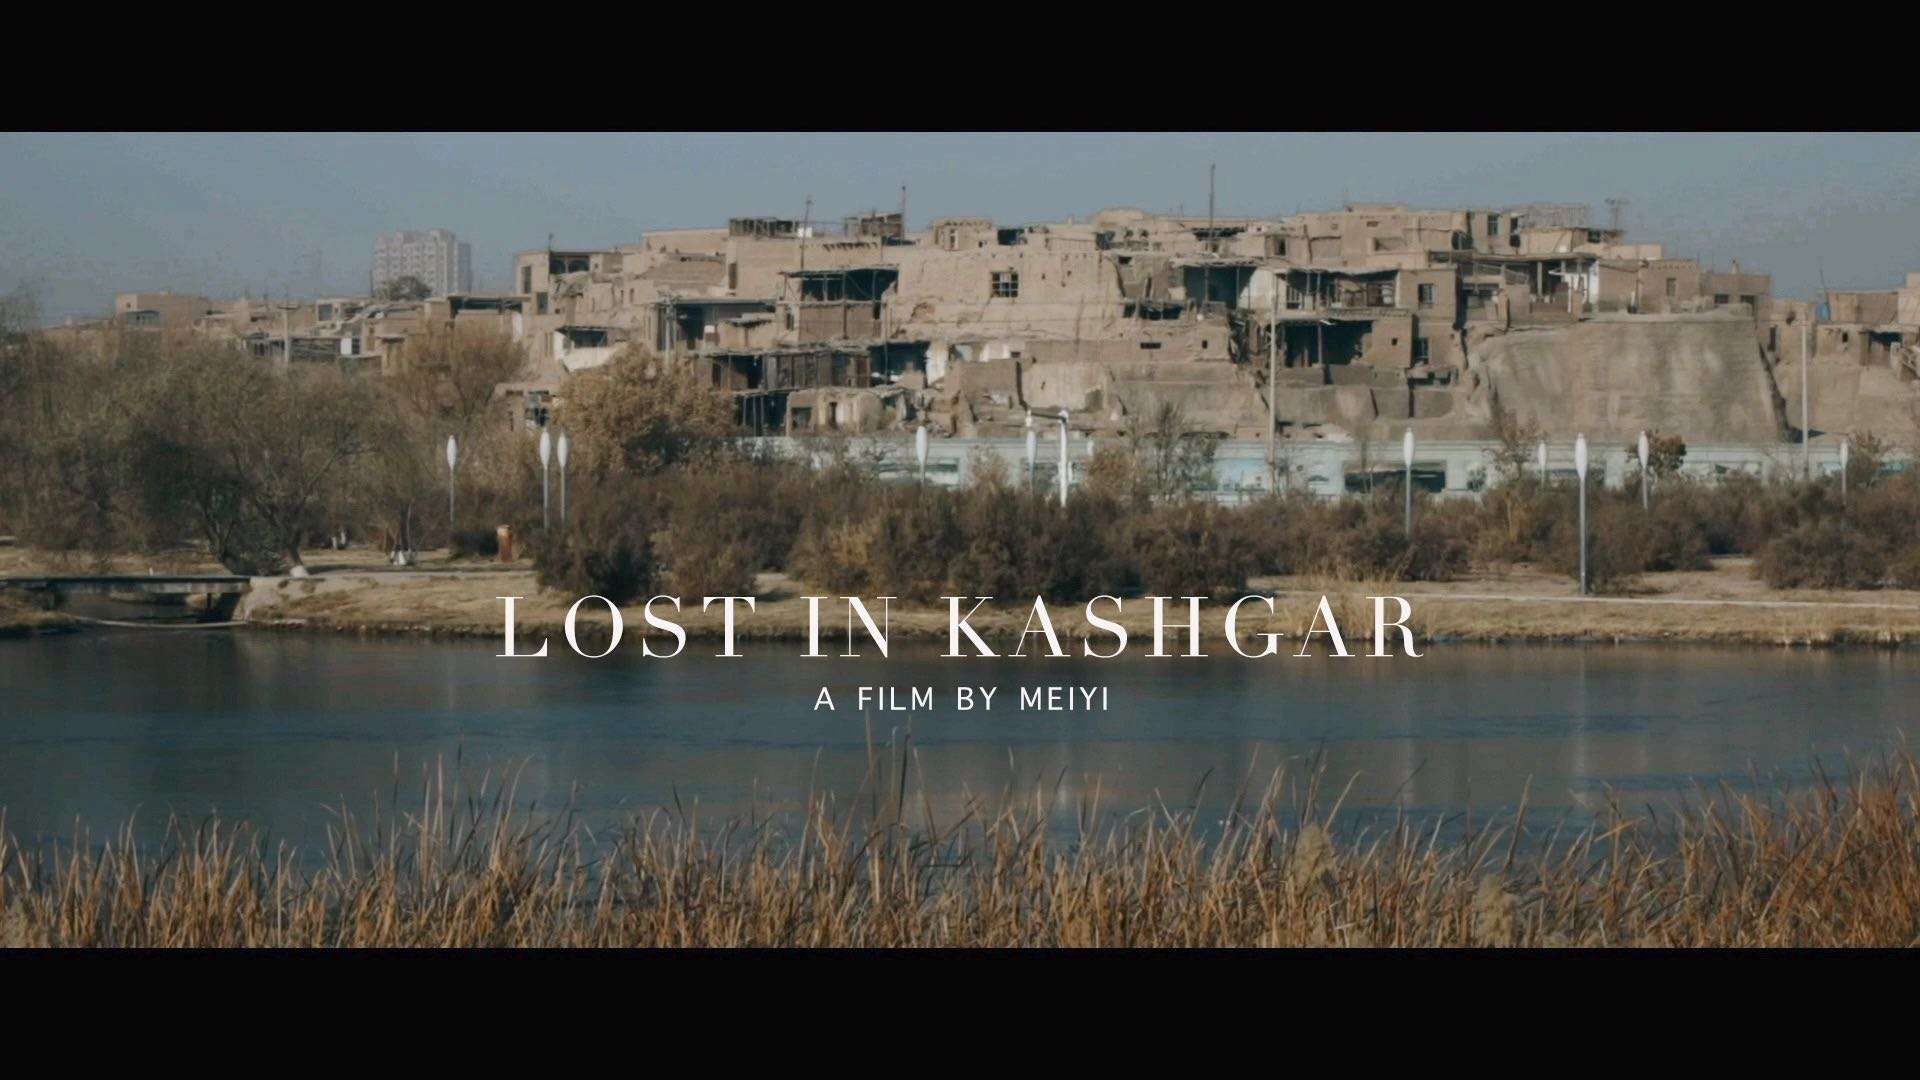 Lost in kashgar